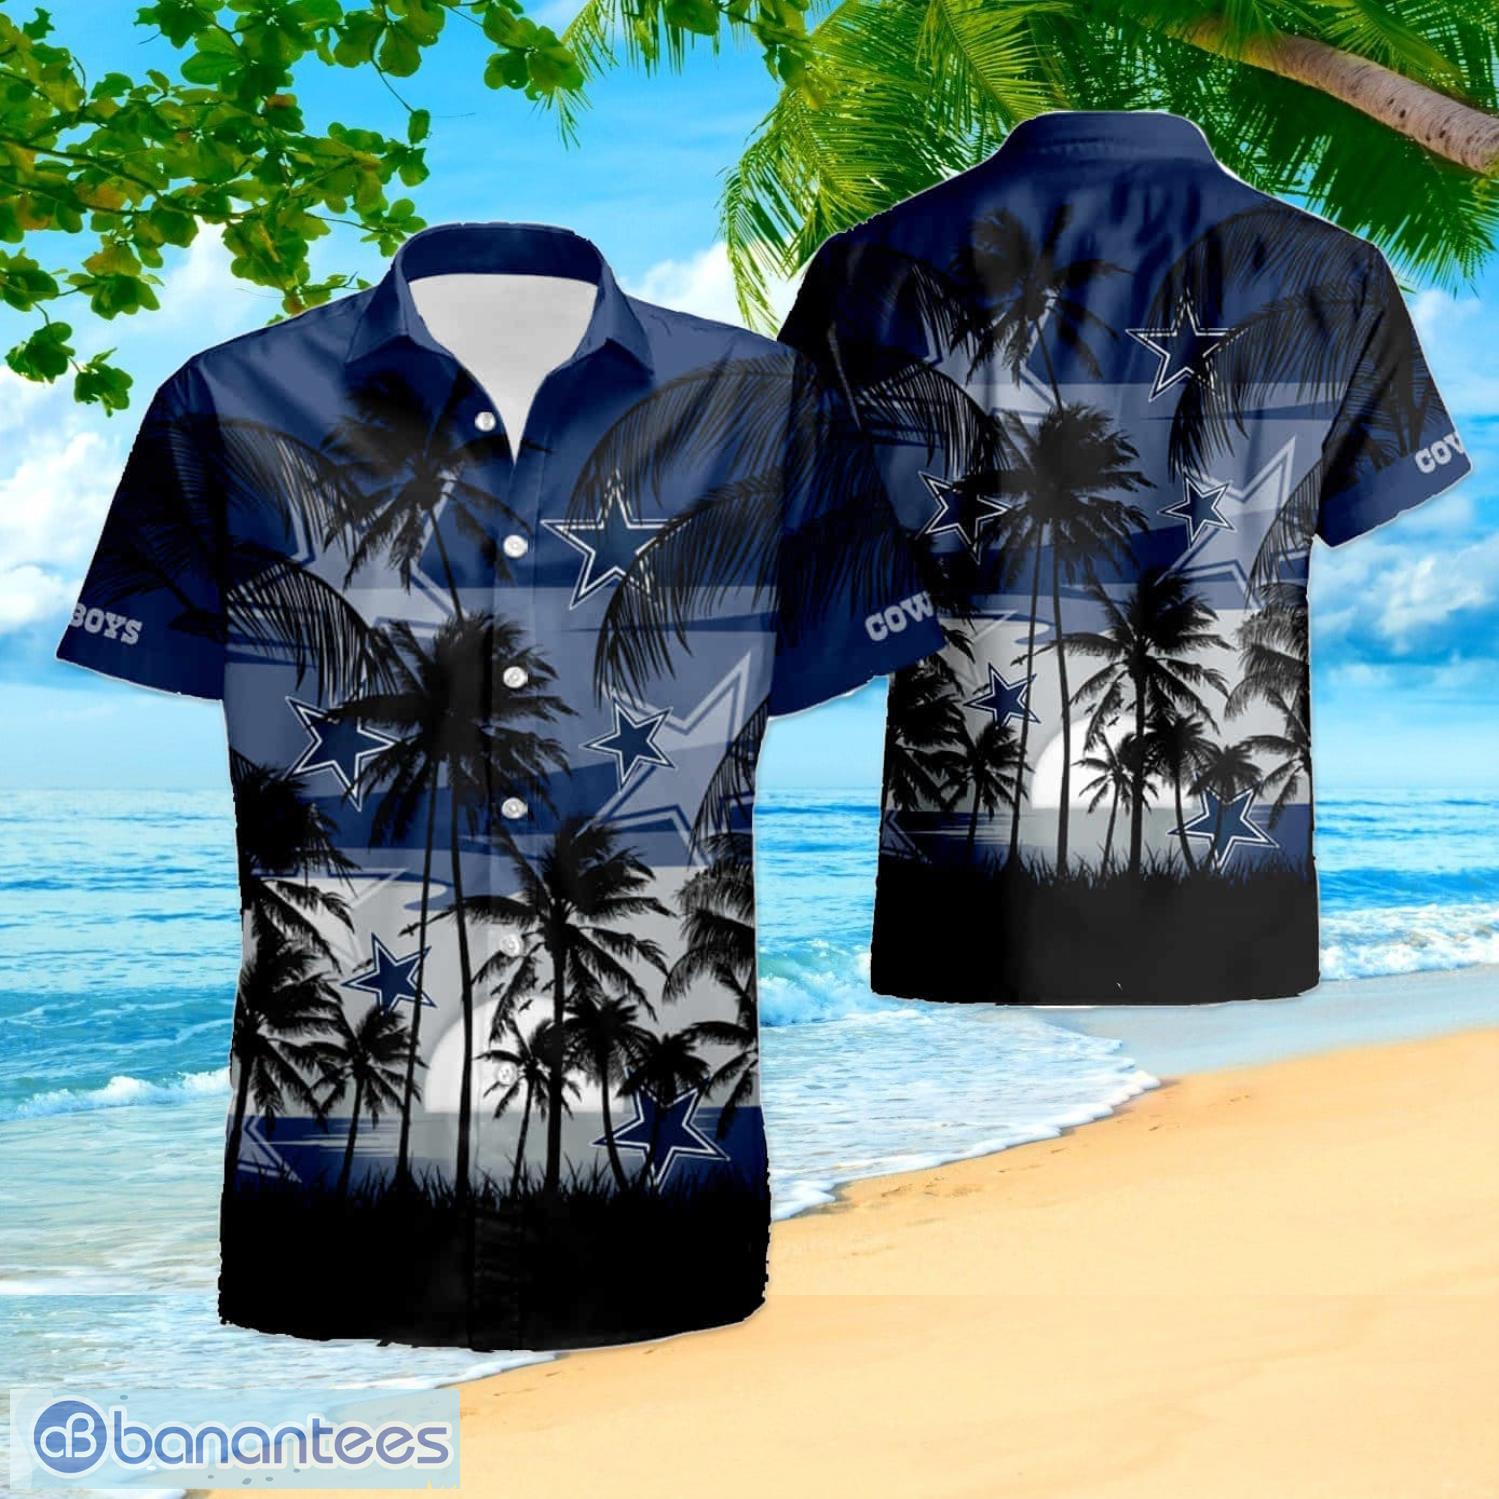 Nfl Dallas Cowboys Tropical Hawaiian Shirt And Shorts Best Gift